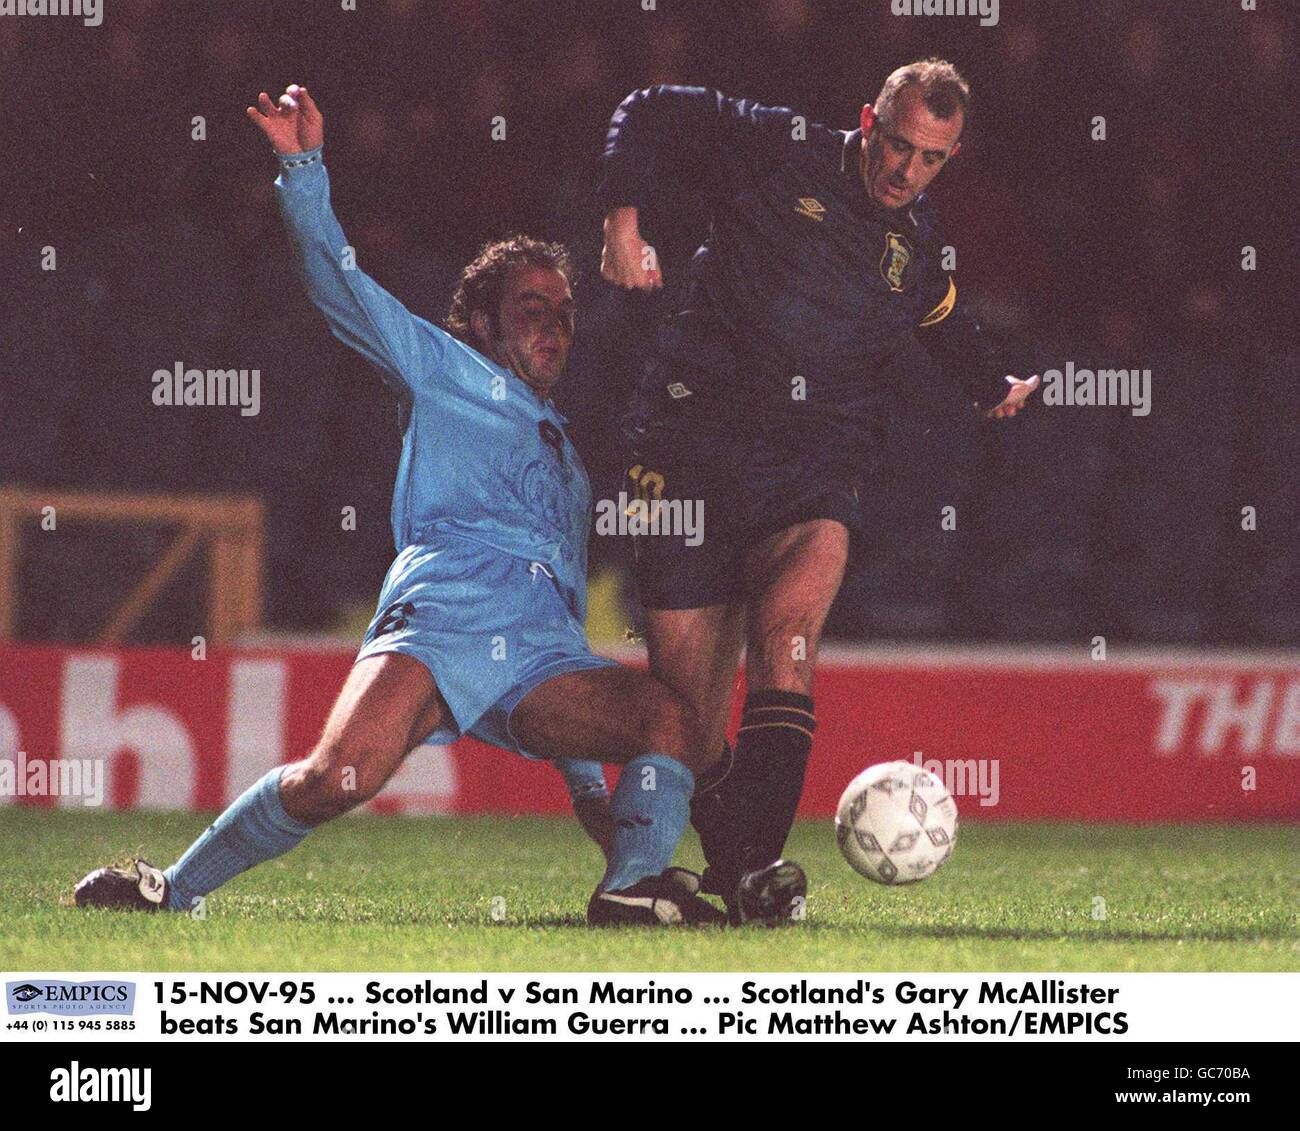 15-NOV-95... Escocia contra San Marino ... Gary McAllister de Escocia vence a William Guerra de San Marino Foto de stock